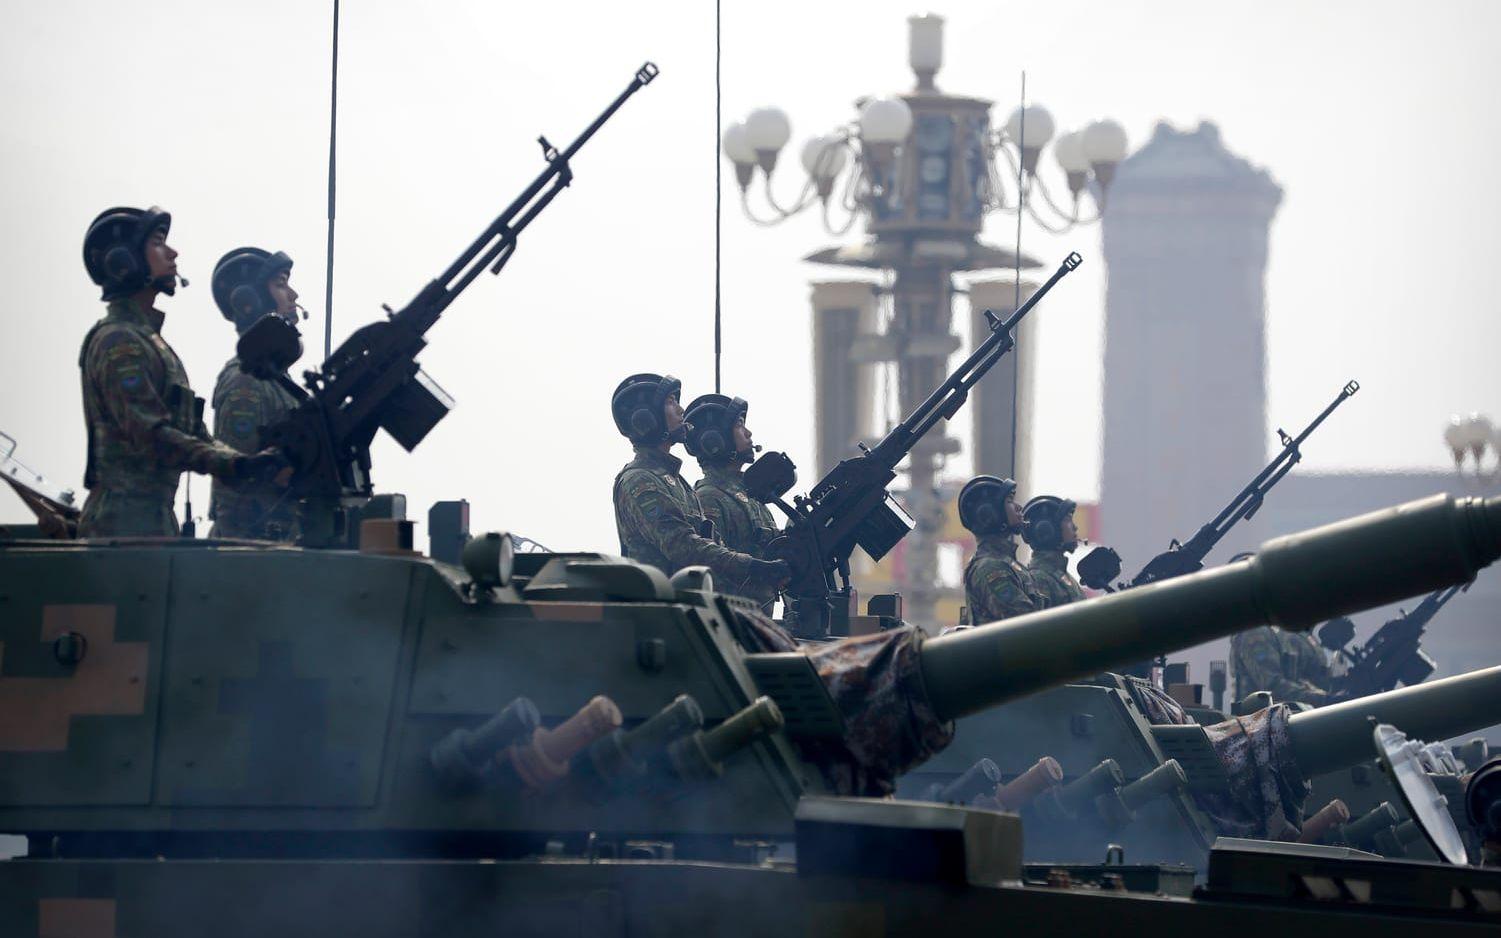 Geely samarbetar med statliga försvarsjätten China North Industries, som bland annat tillverkar stridsvagnar – ett bolag som står under sanktion av USA. Här syns stridsvagnsförare som står i givakt under firandet av Folkrepubliken Kinas 70-årsjubileum 2019. (Arkivbild)